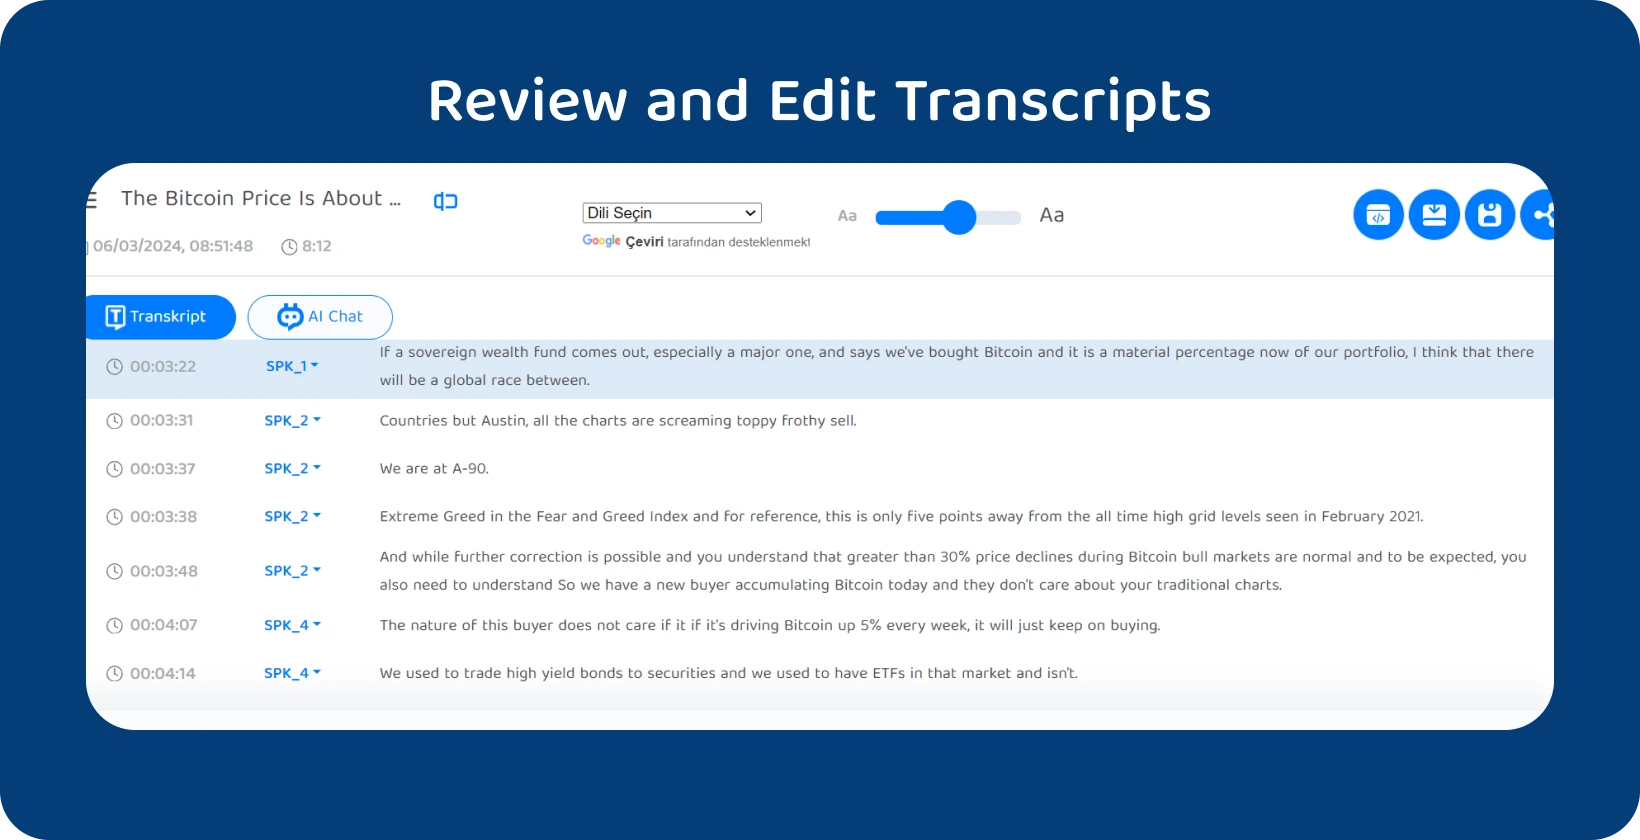 Posnetek zaslona plošče za urejanje Transkriptor s funkcijami za čiščenje in popravljanje prepisov intervjujev.